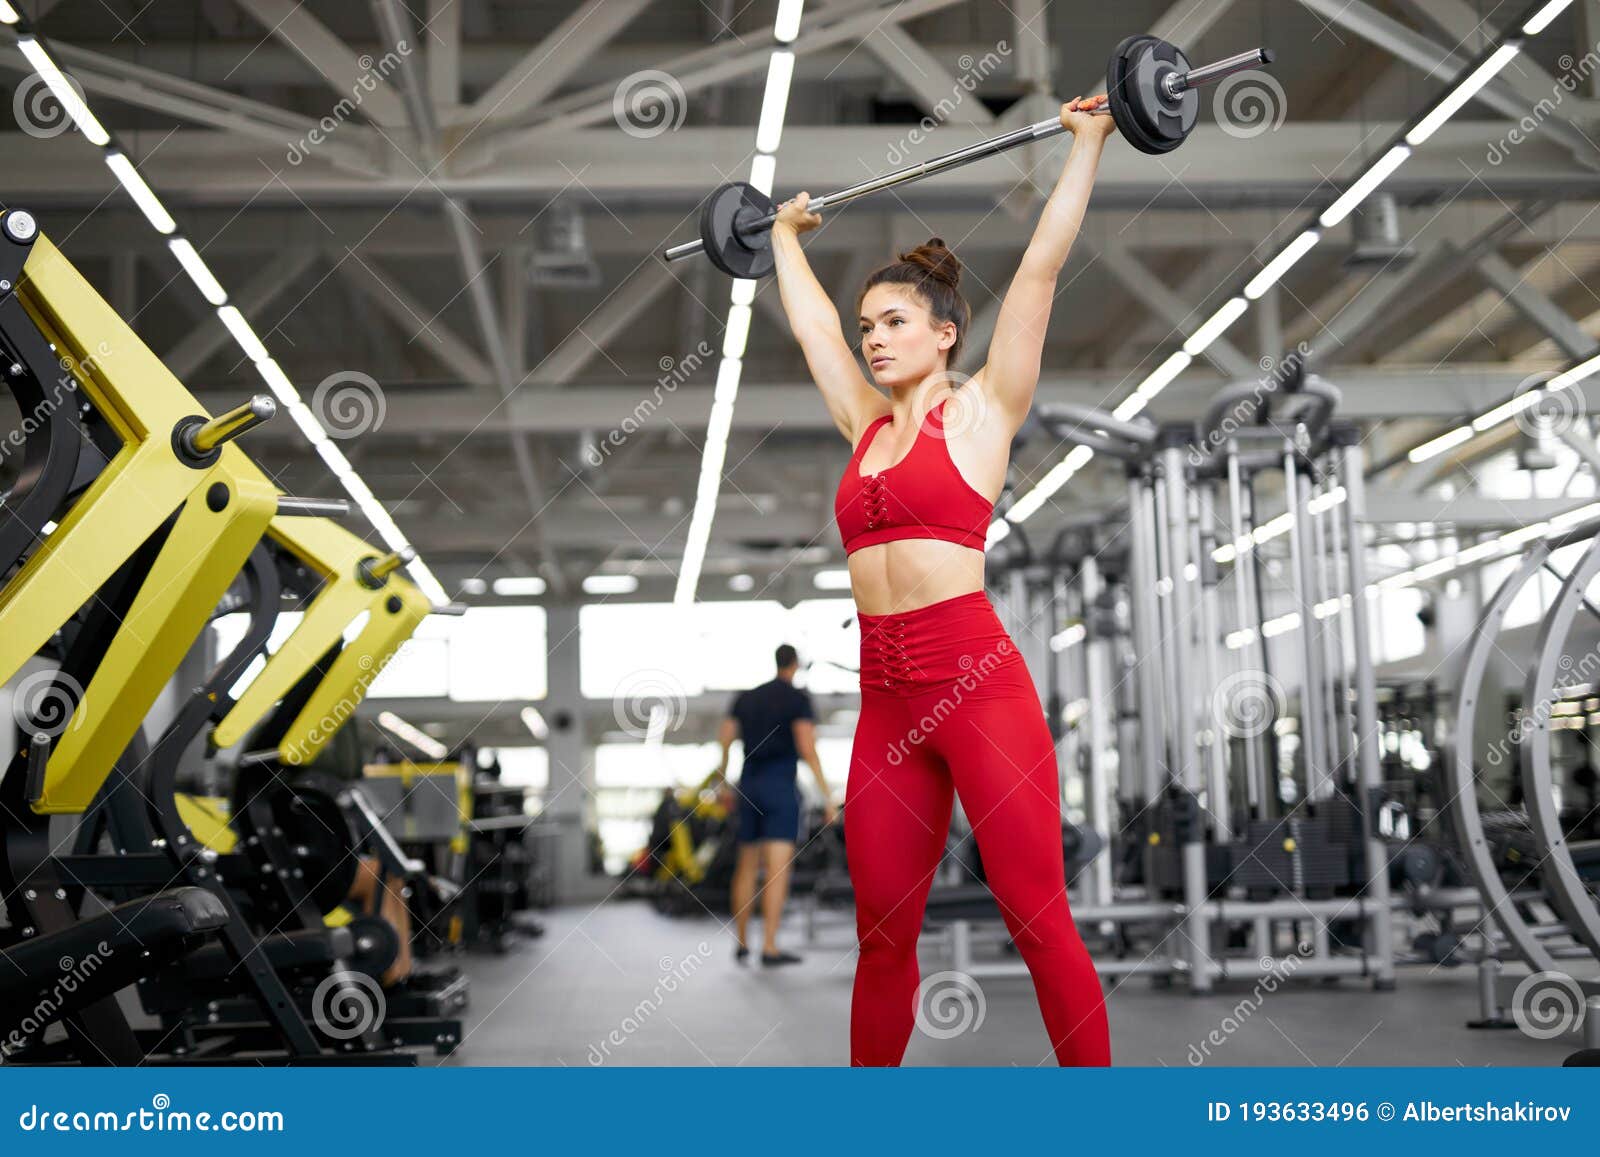 【肌肉腿部】健美强壮肌肉女汉子图集（2） - 哔哩哔哩